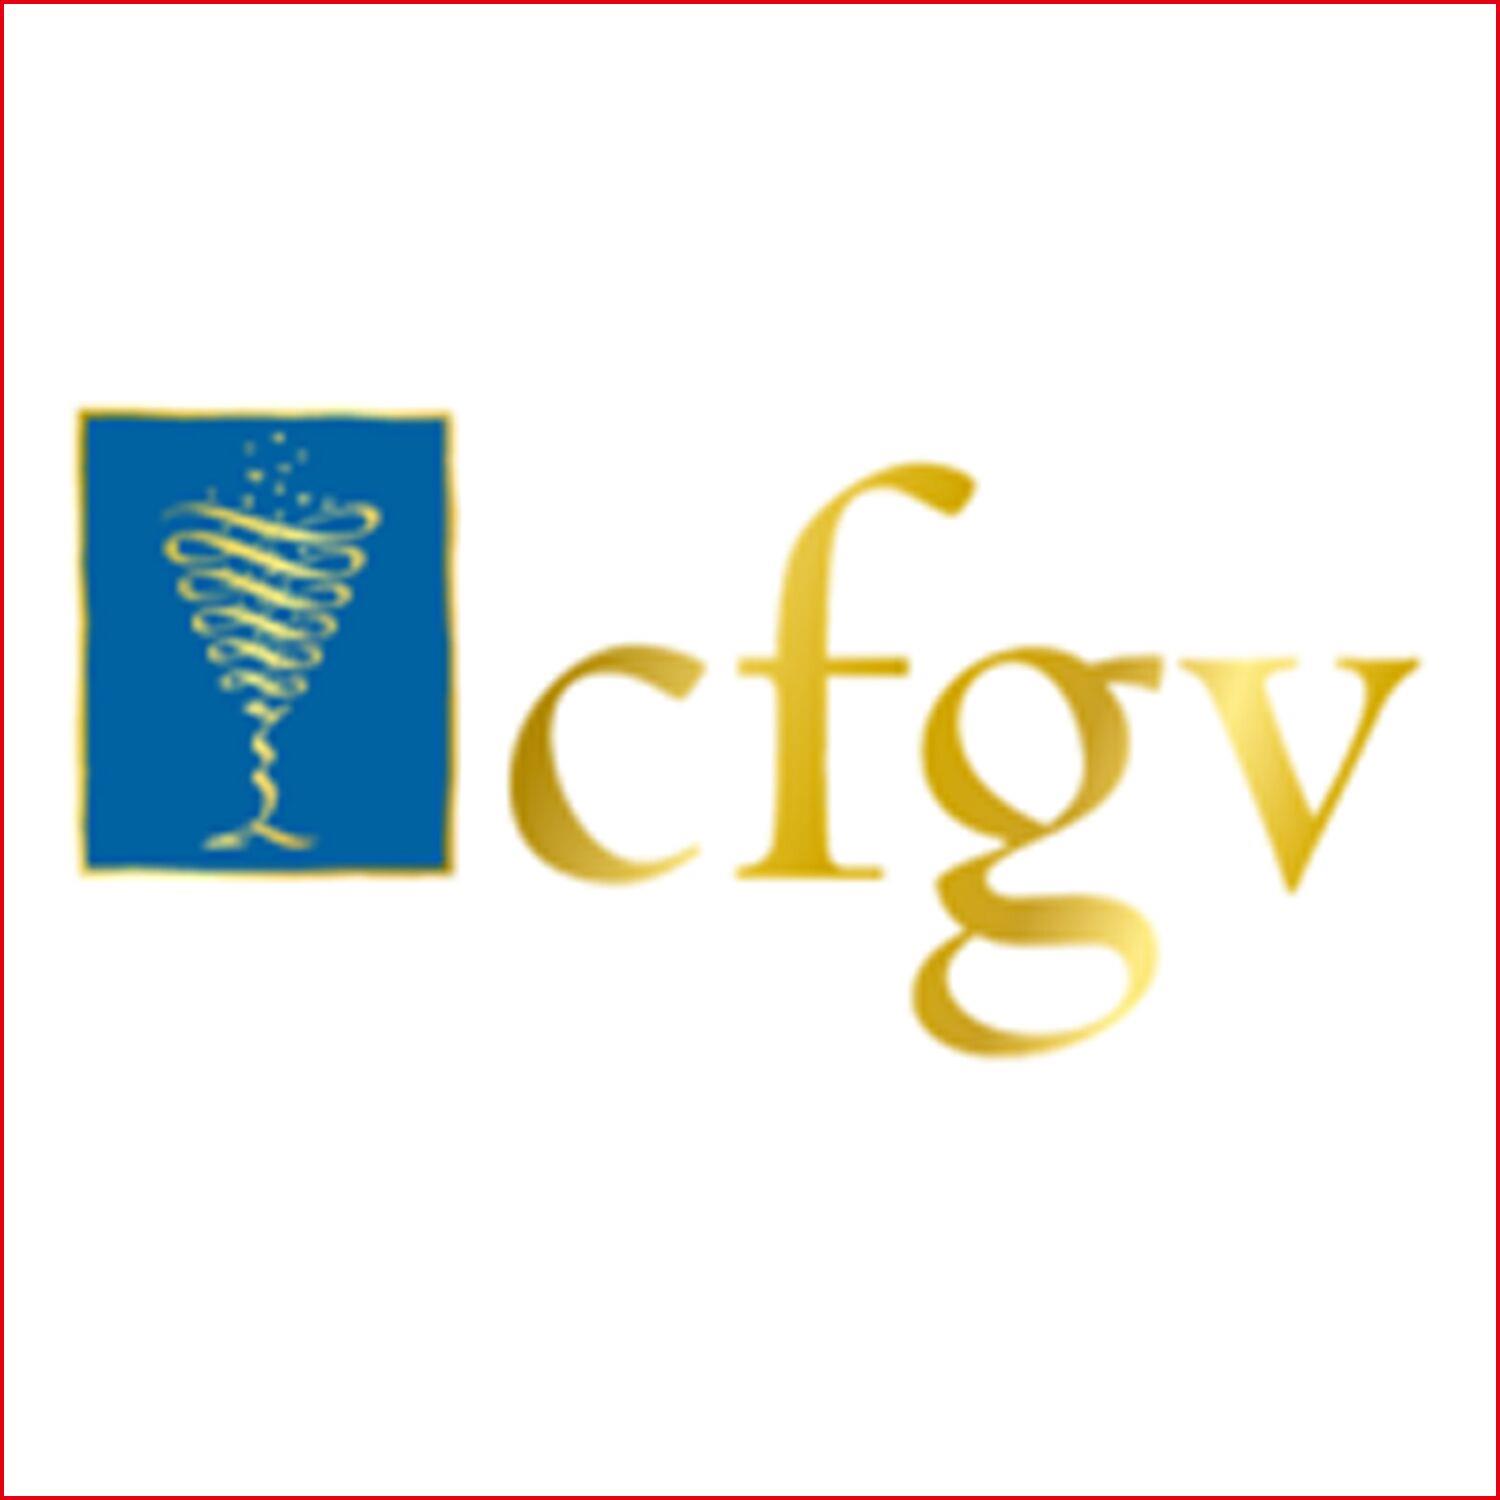 CFGV Compagnie Francaise des Grands Vins